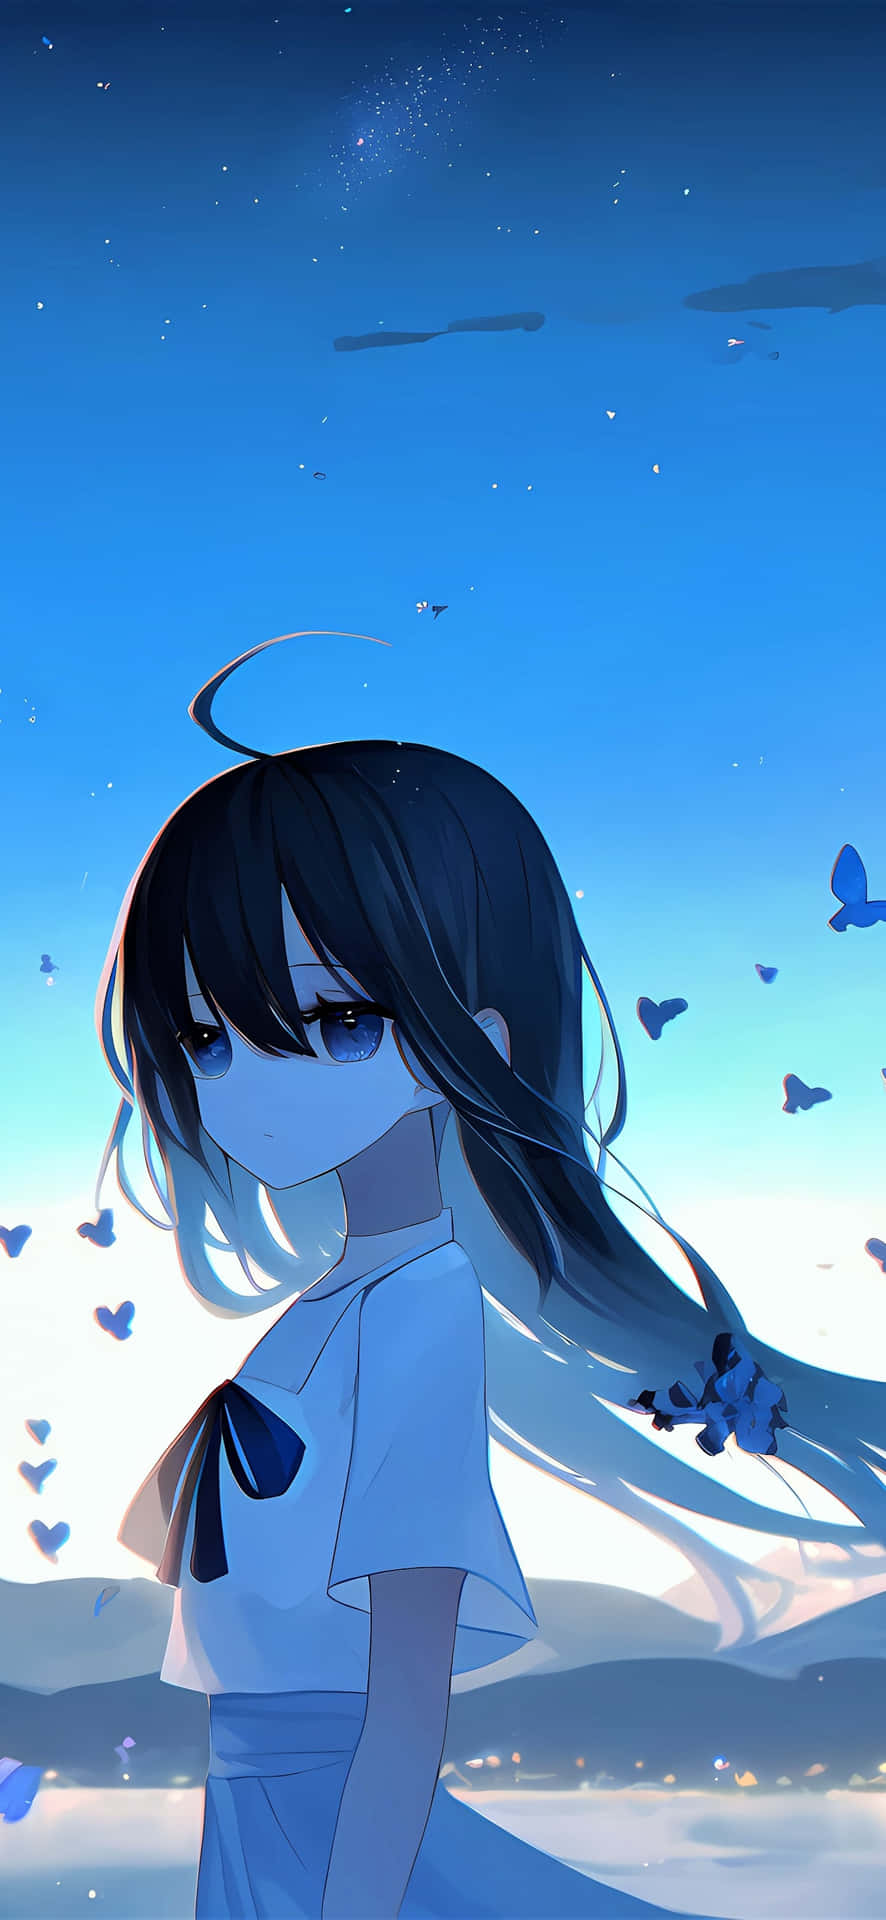 Anime Girl Twilight Butterflies Wallpaper